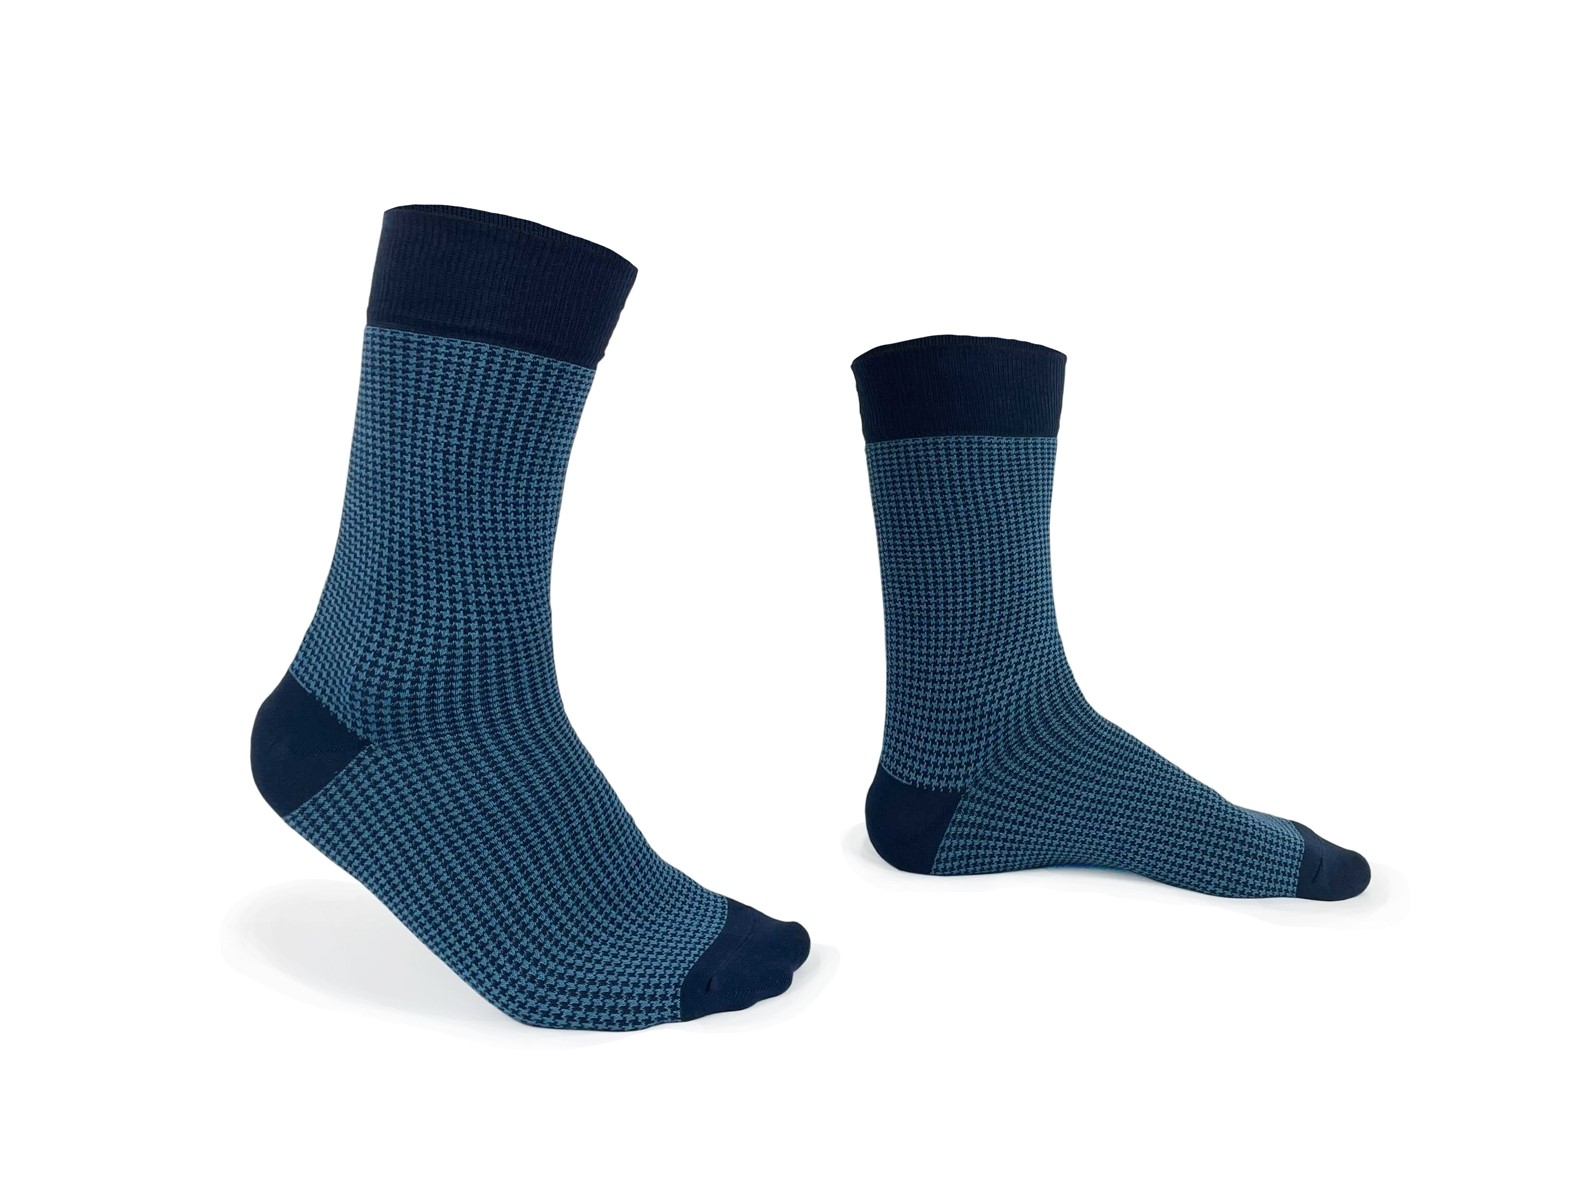 chaussettes-fantaisie-hommes-femmes-en-coton-bleu-marine-à-motif-pied-de-poule-bleu marine et bleu-ciel-remaillées-à-la-main